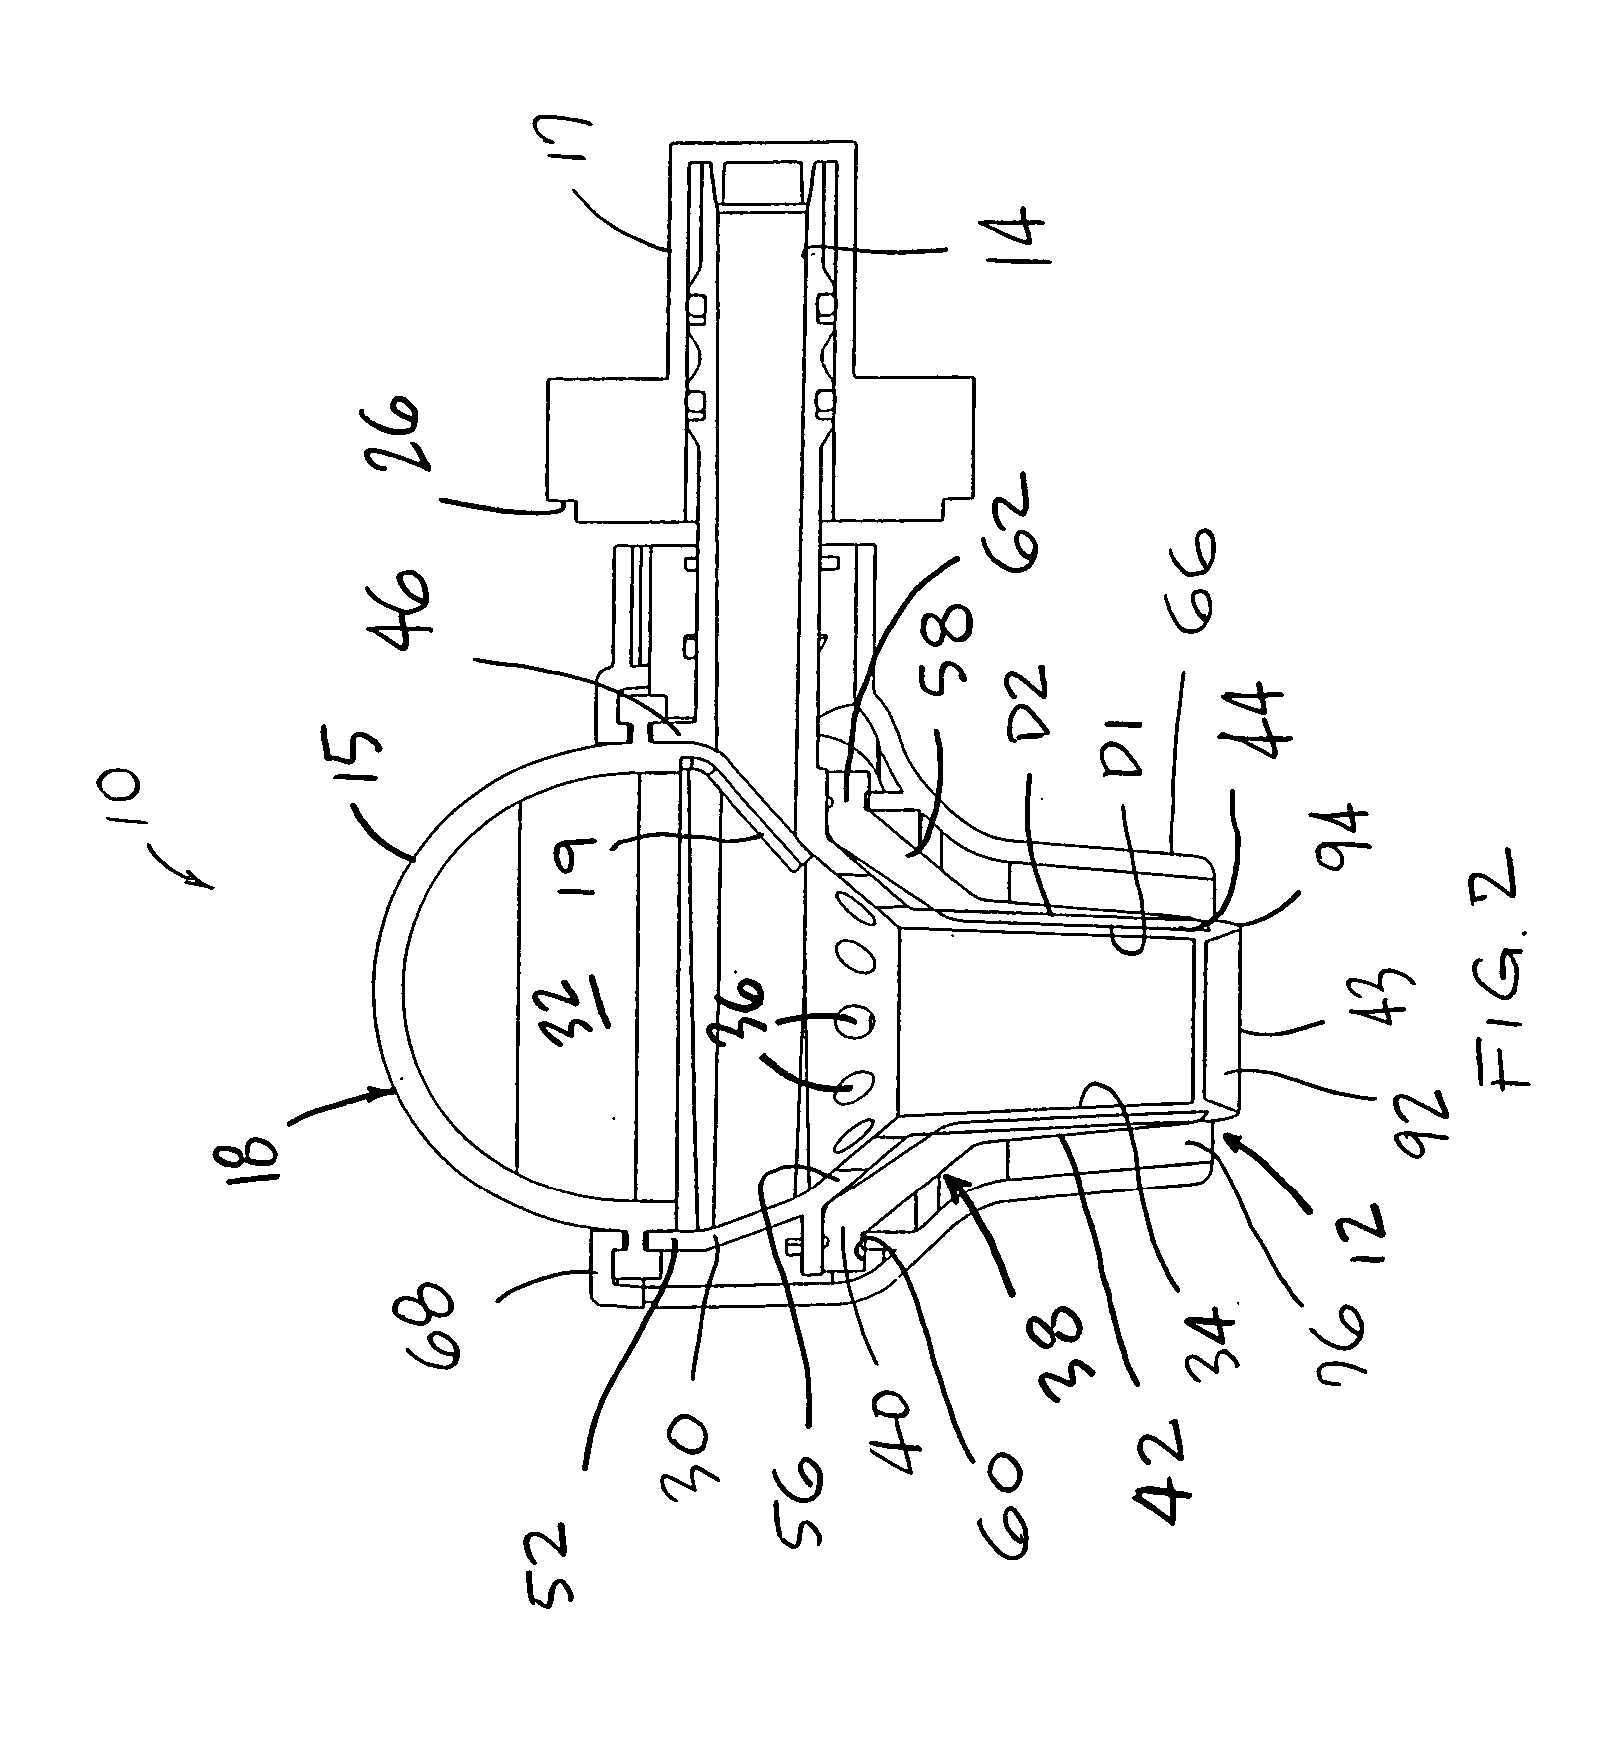 Method for dispensing fluids